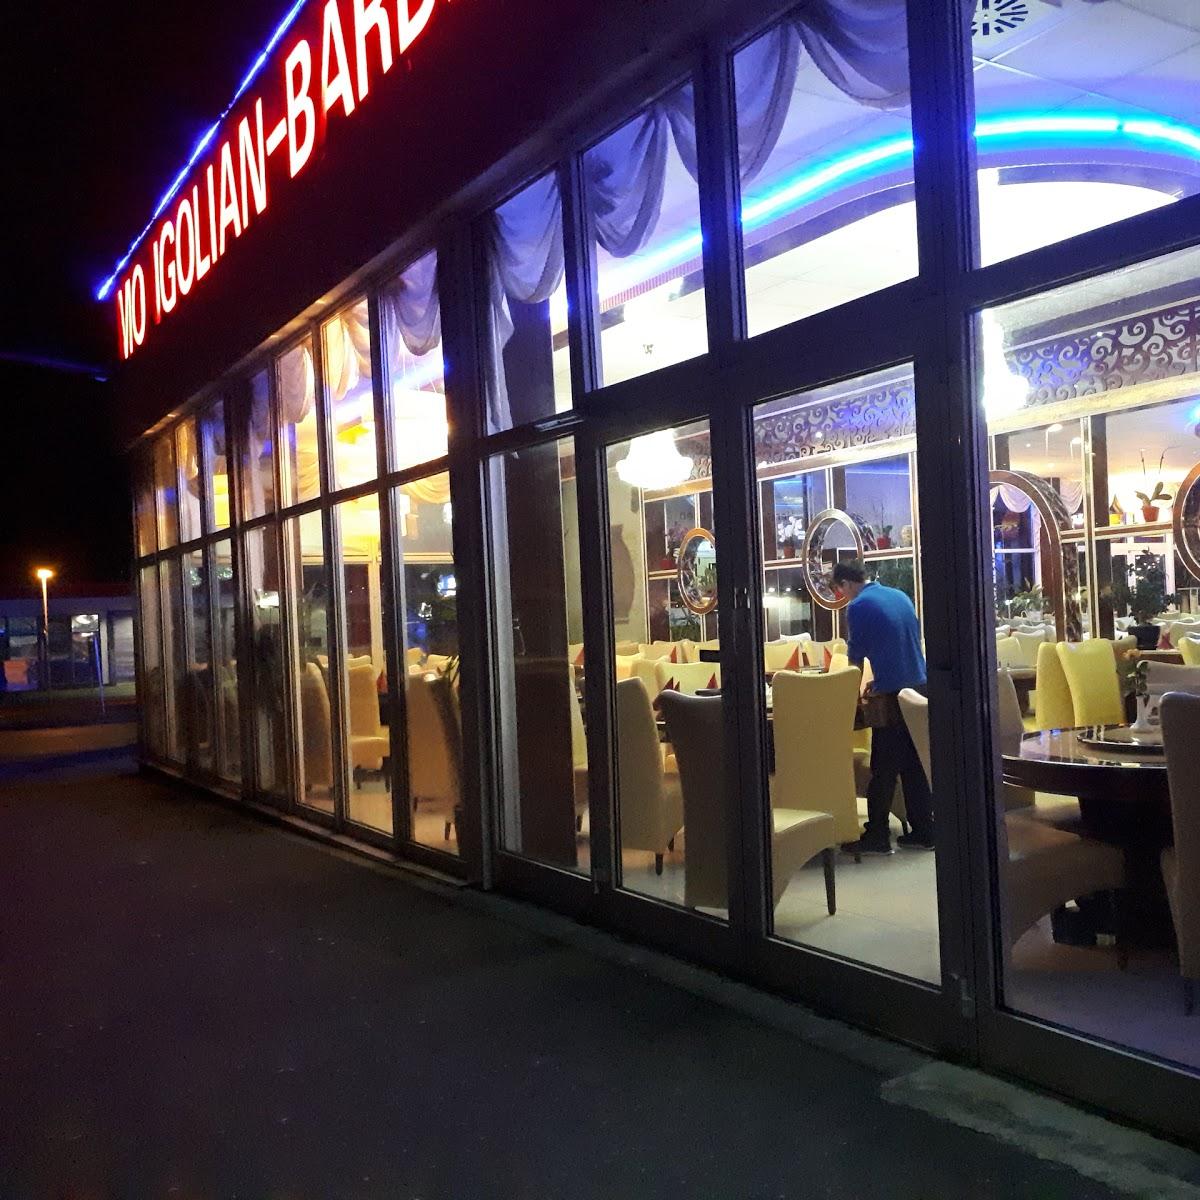 Restaurant "Mongolian Barbeque Kitzingen" in  Kitzingen